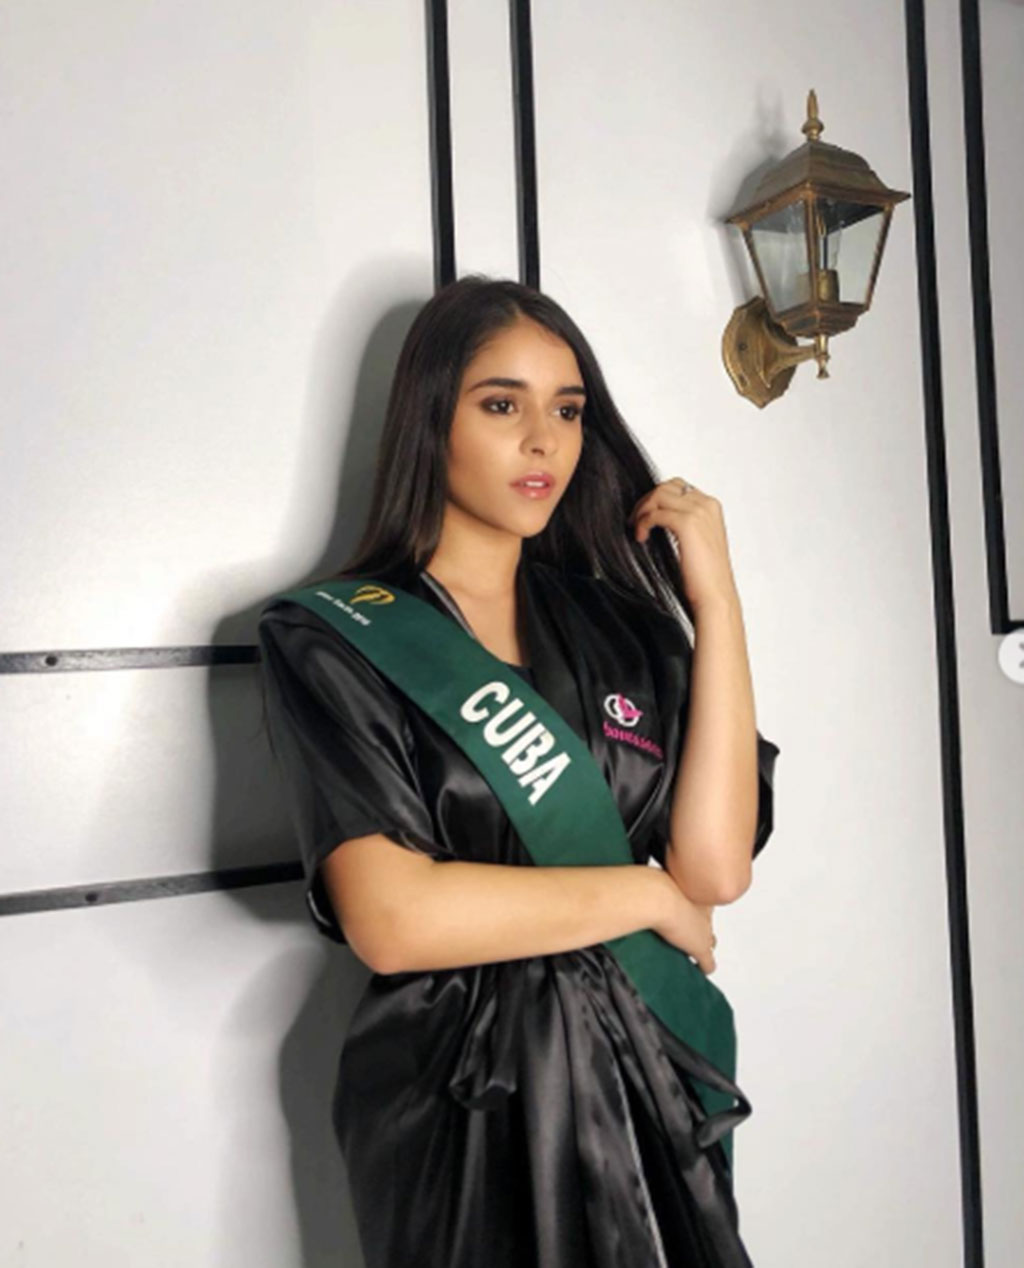 Monica Aguilar cũng dành nhiều lời khen cho ban tổ chức cuộc thi khi luôn đảm bảo an toàn cho các người đẹp trong quá trình tham gia Miss Earth 2018 (Ảnh: Instagram NV)